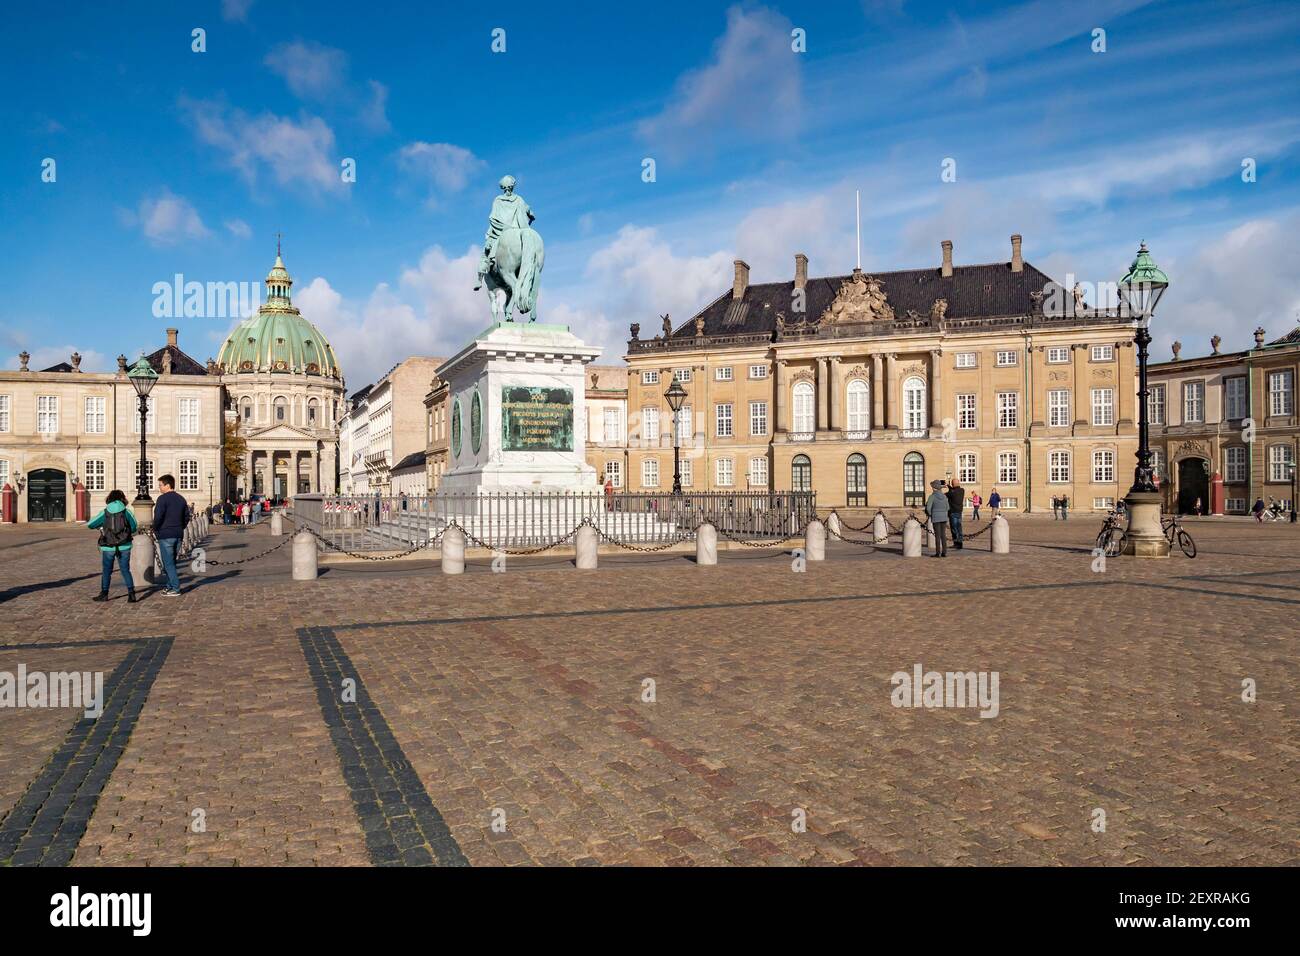 23 settembre 2018:Copenhagen, Danimarca - turisti in visita in Piazza Amalienborg, con il Palazzo reale, la statua equestre di Frederik V, e Th Foto Stock